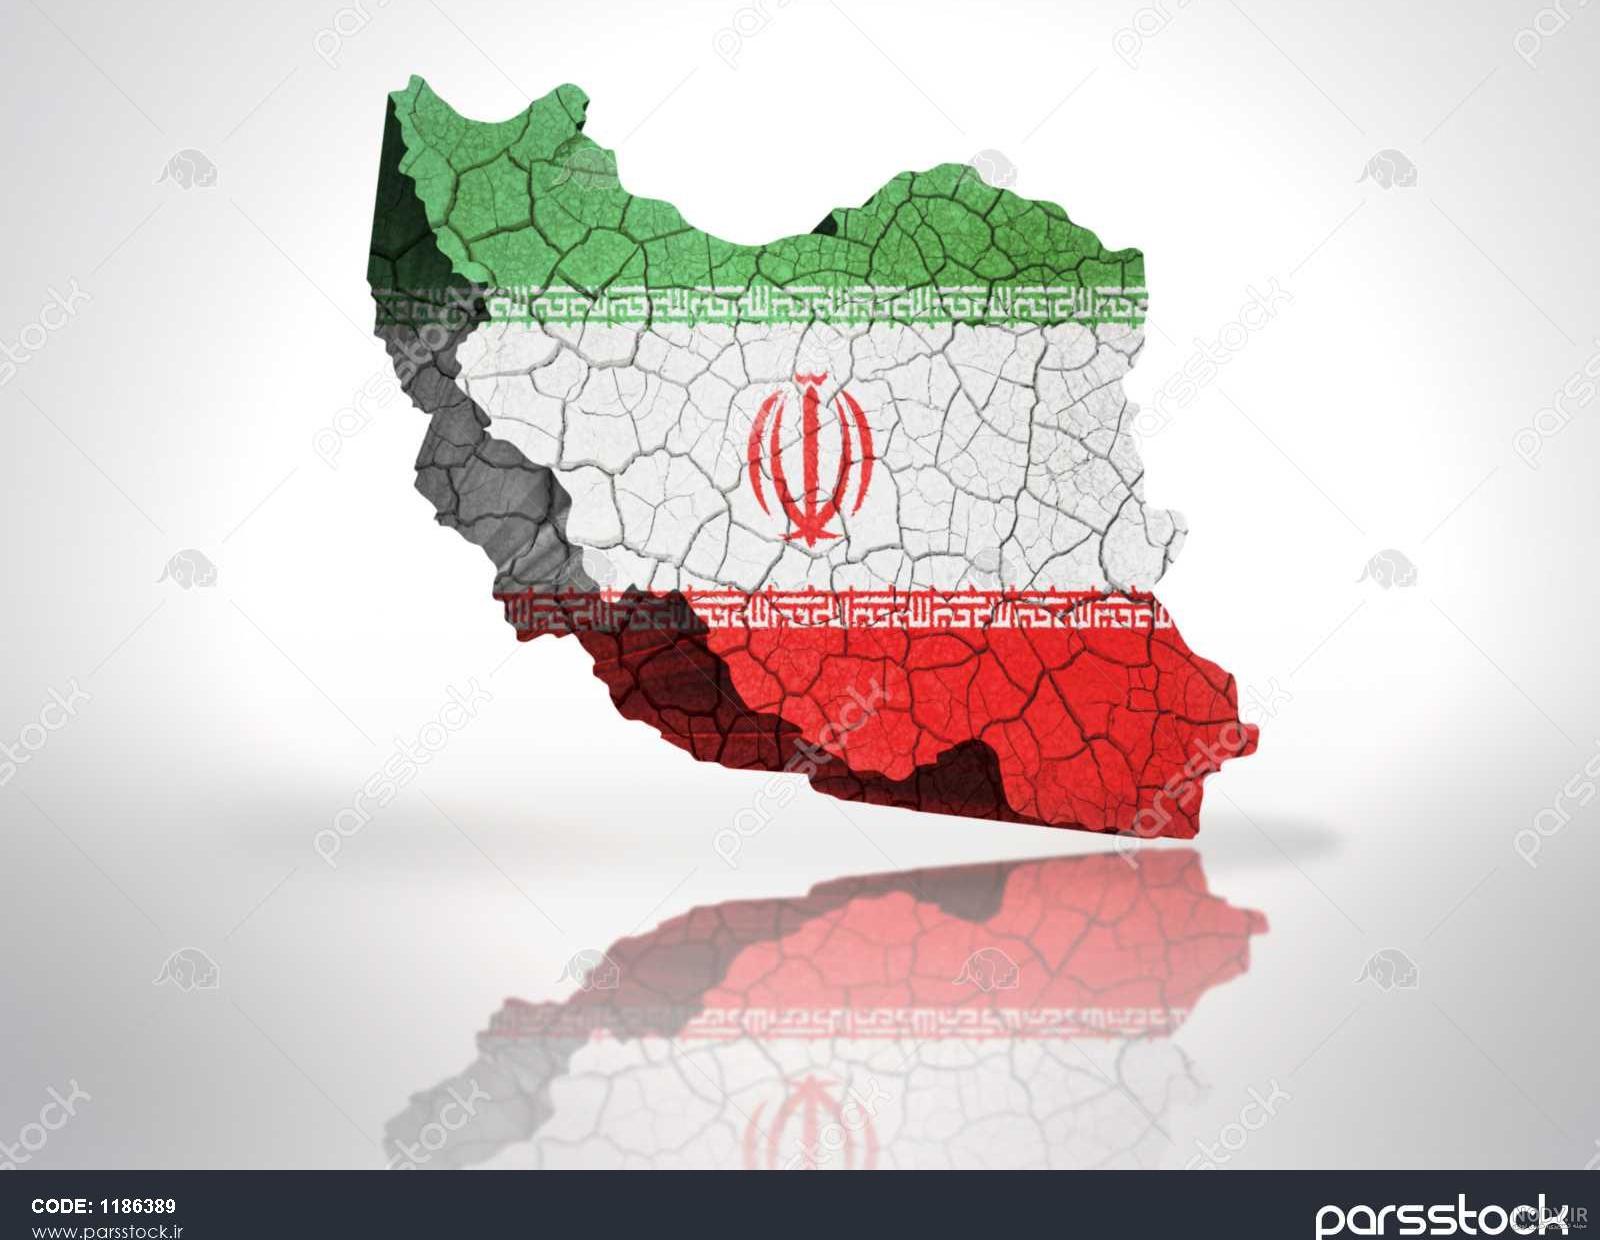 عکس پرچم ایران برای پابجی